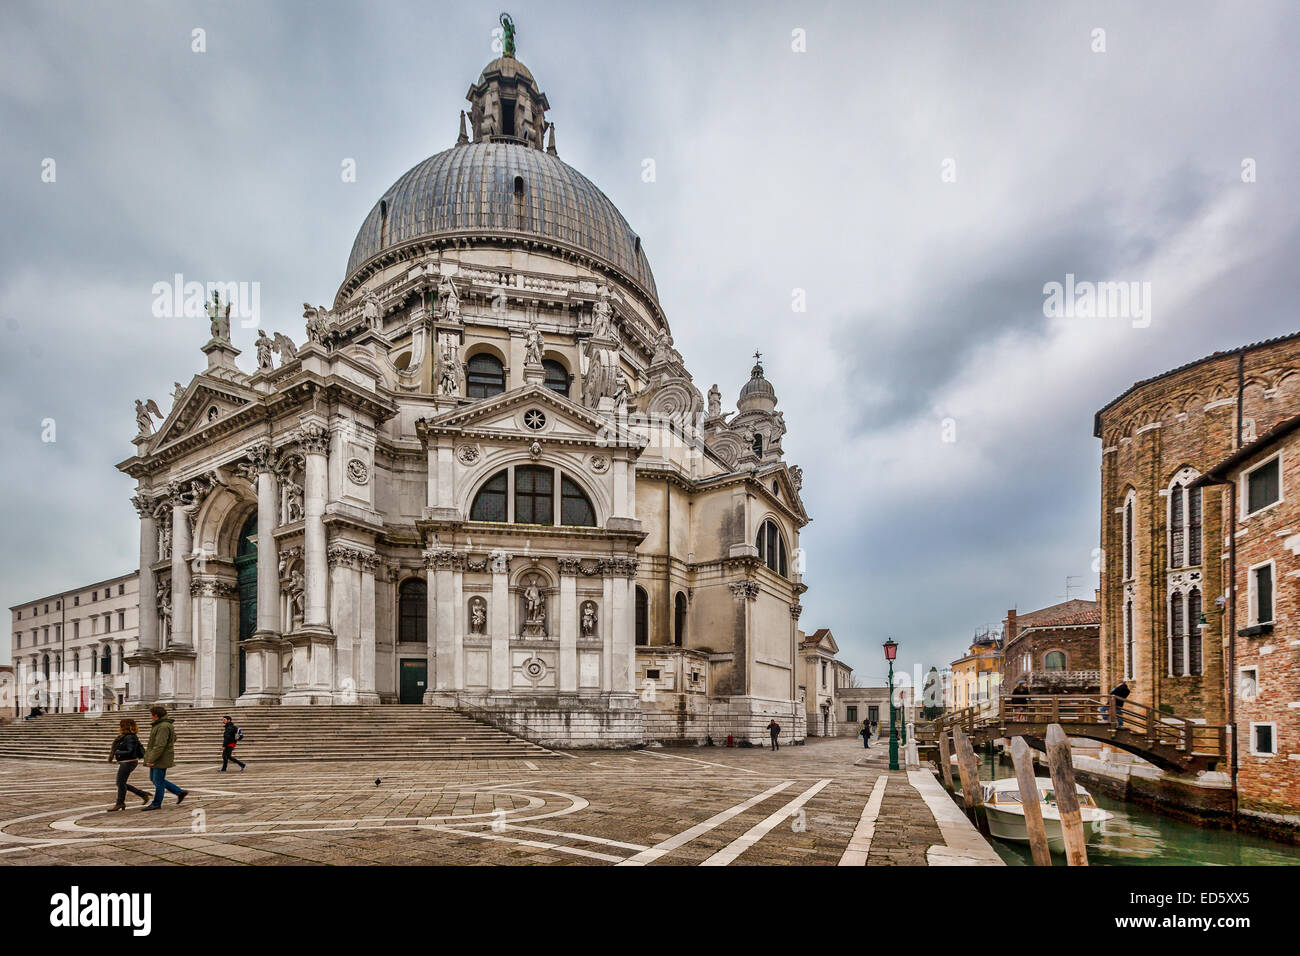 Venecia - la Basílica de Santa María de la Salud (Basilica di Santa Maria  della Salute), situado junto al Grand Canal - Italia Fotografía de stock -  Alamy